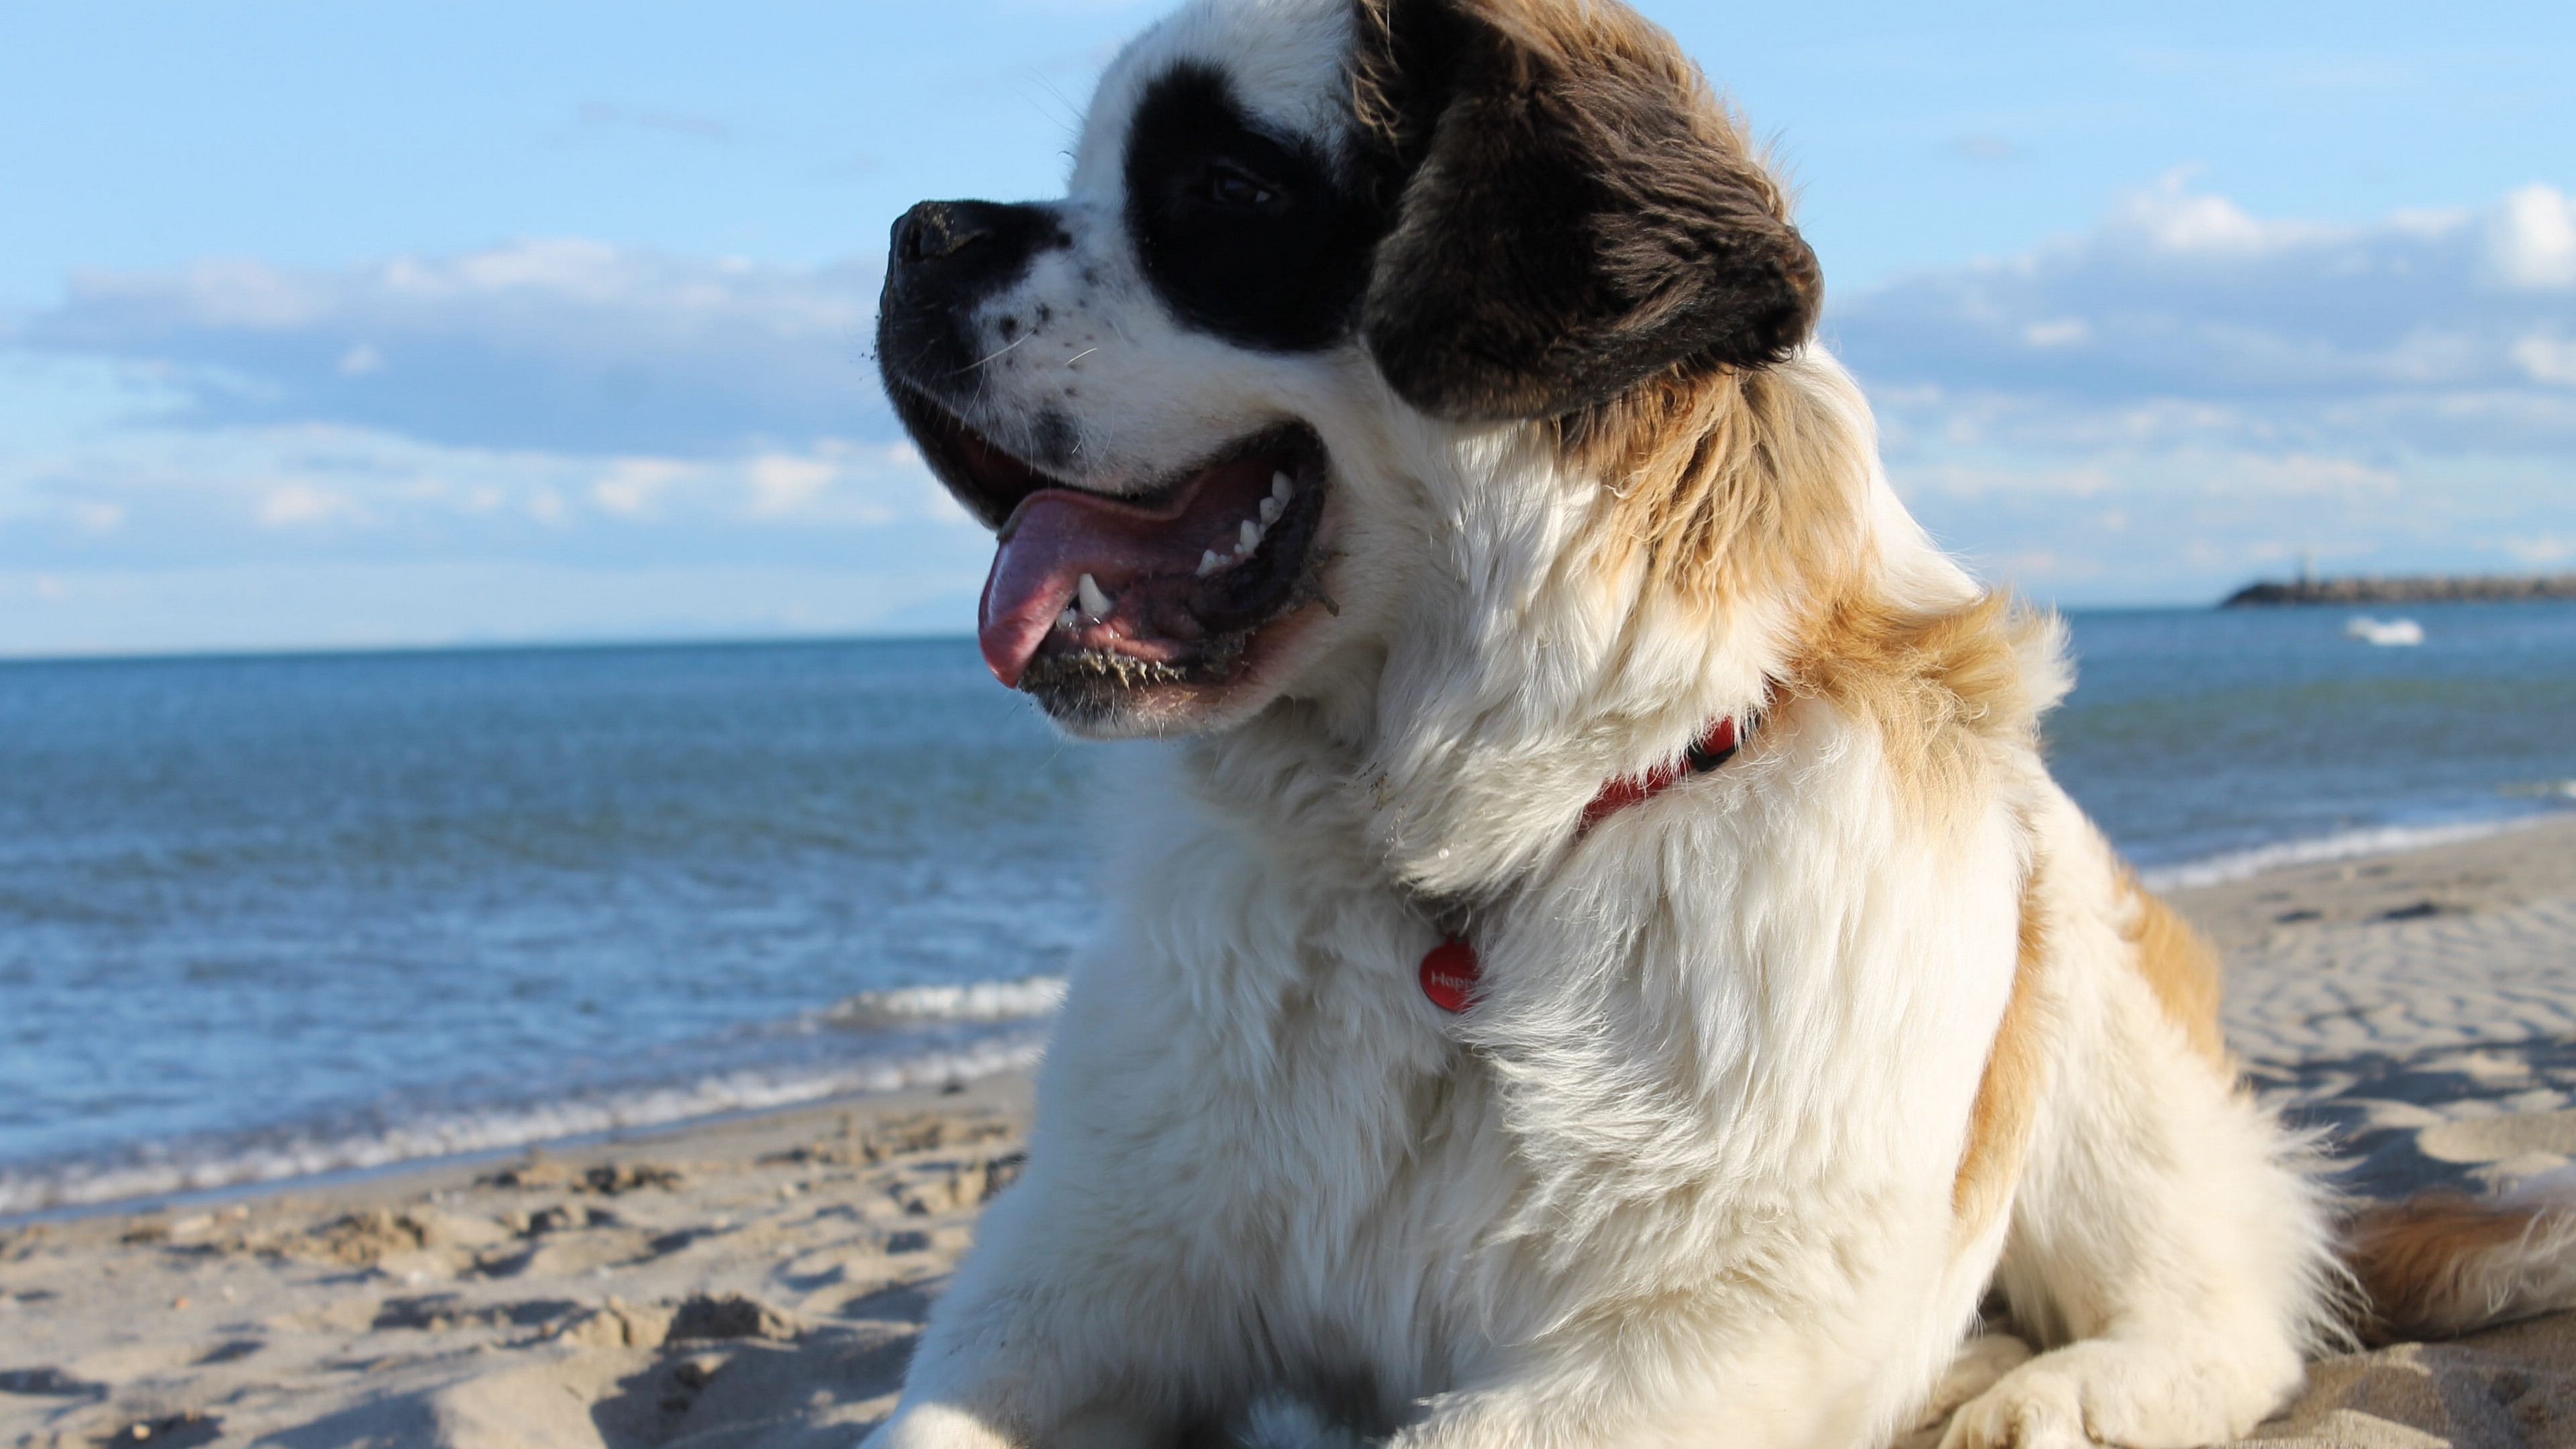 40 多张免费的“Saint Bernard”和“狗”照片 - Pixabay